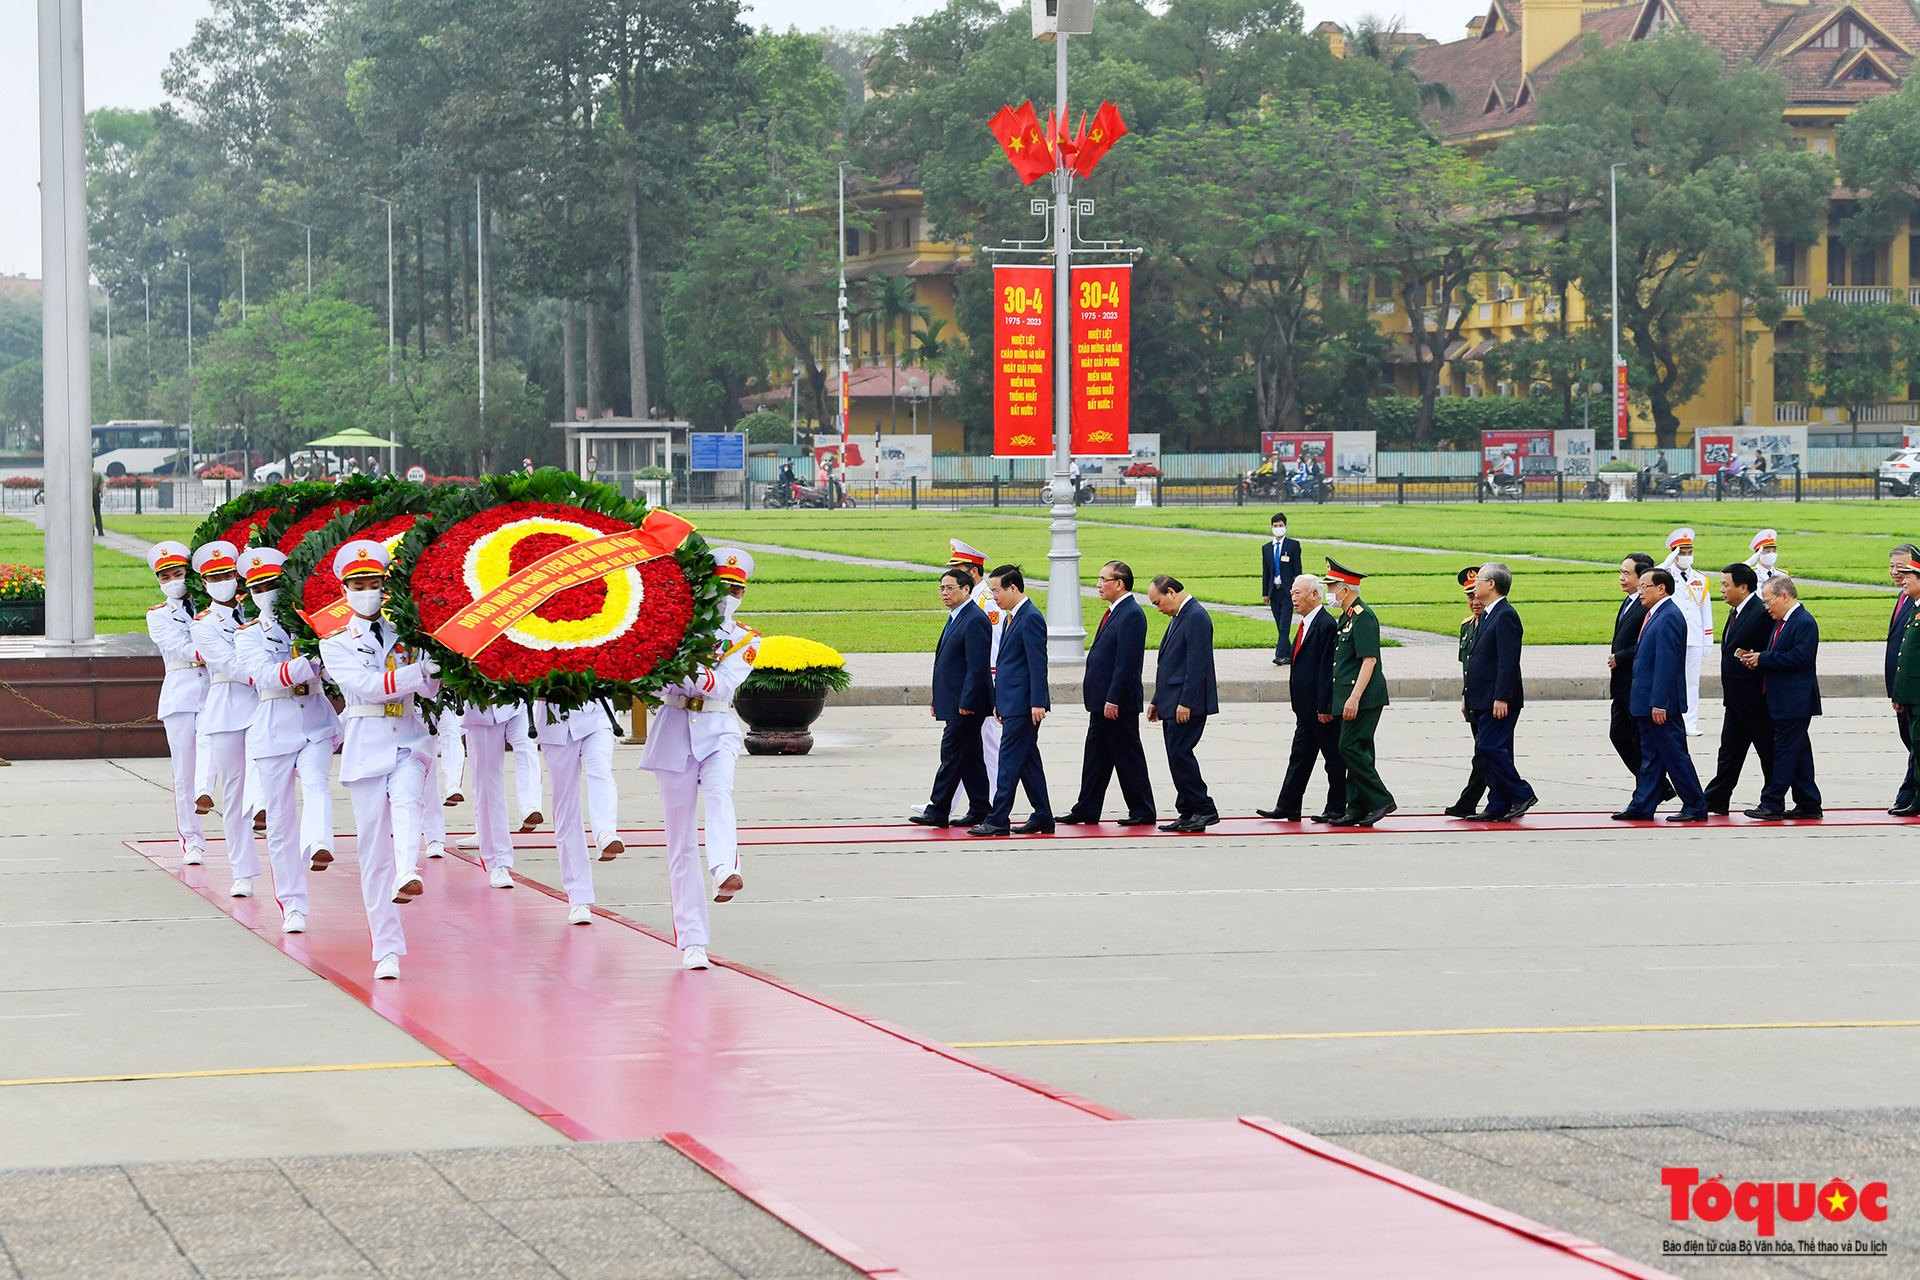 Lãnh đạo Đảng, Nhà nước viếng lăng Chủ tịch Hồ Chí Minh - Ảnh 2.